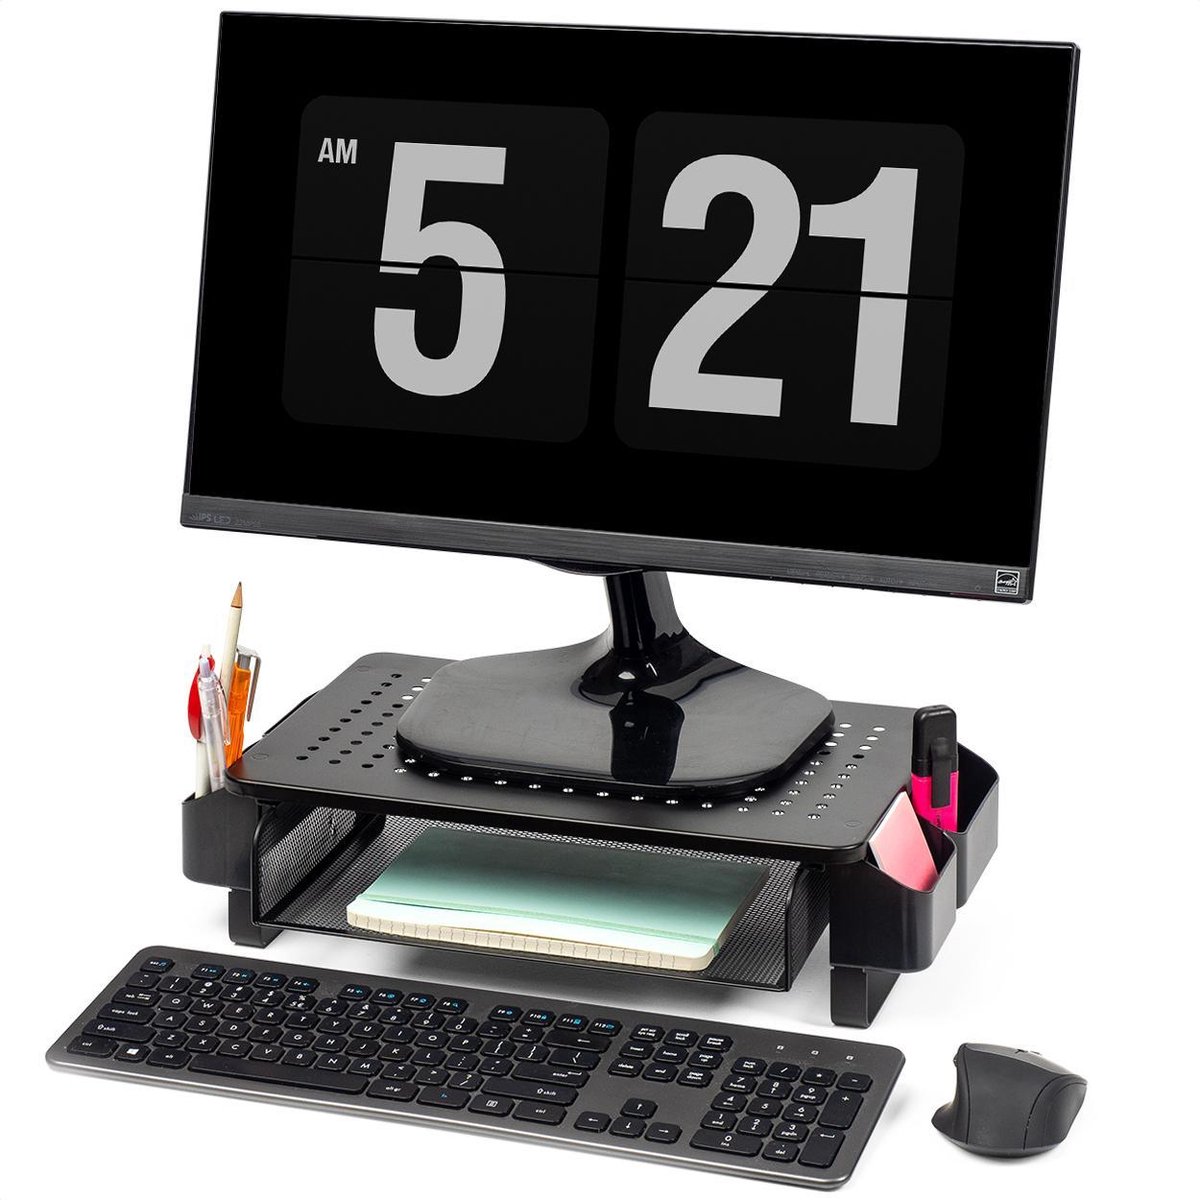 LifeGoods Monitorstandaard - Monitor Verhoger - Beeldscherm Verhoger - Verstelbaar - 37 x 23,5 x 10 cm - Metaal - Zwart